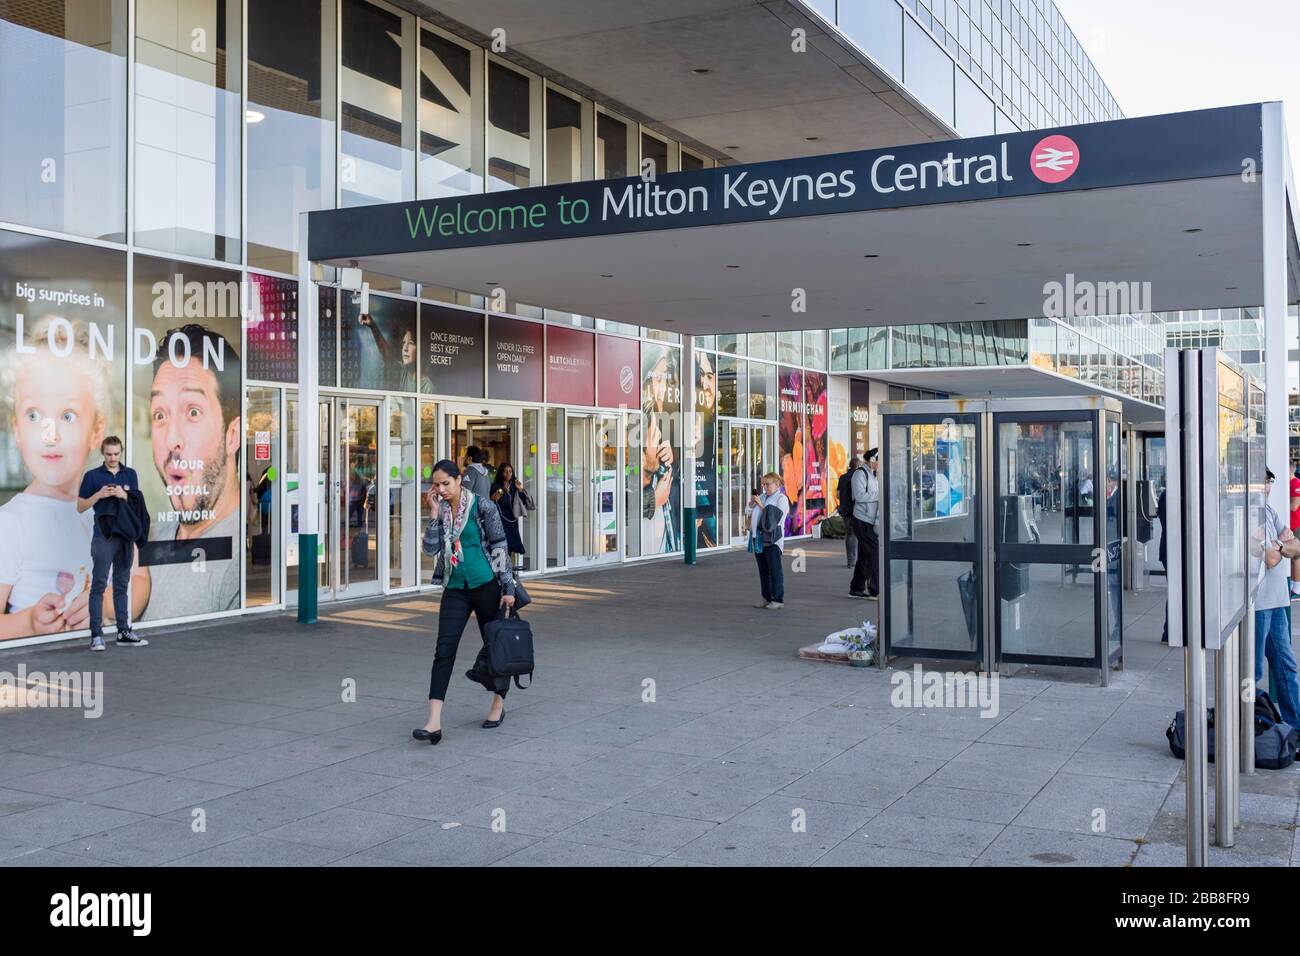 MILTON KEYNES, ROYAUME-UNI - 26 SEPTEMBRE 2018. Gare centrale de Milton Keynes, un terminal ferroviaire majeur sur la ligne principale de la côte ouest Banque D'Images